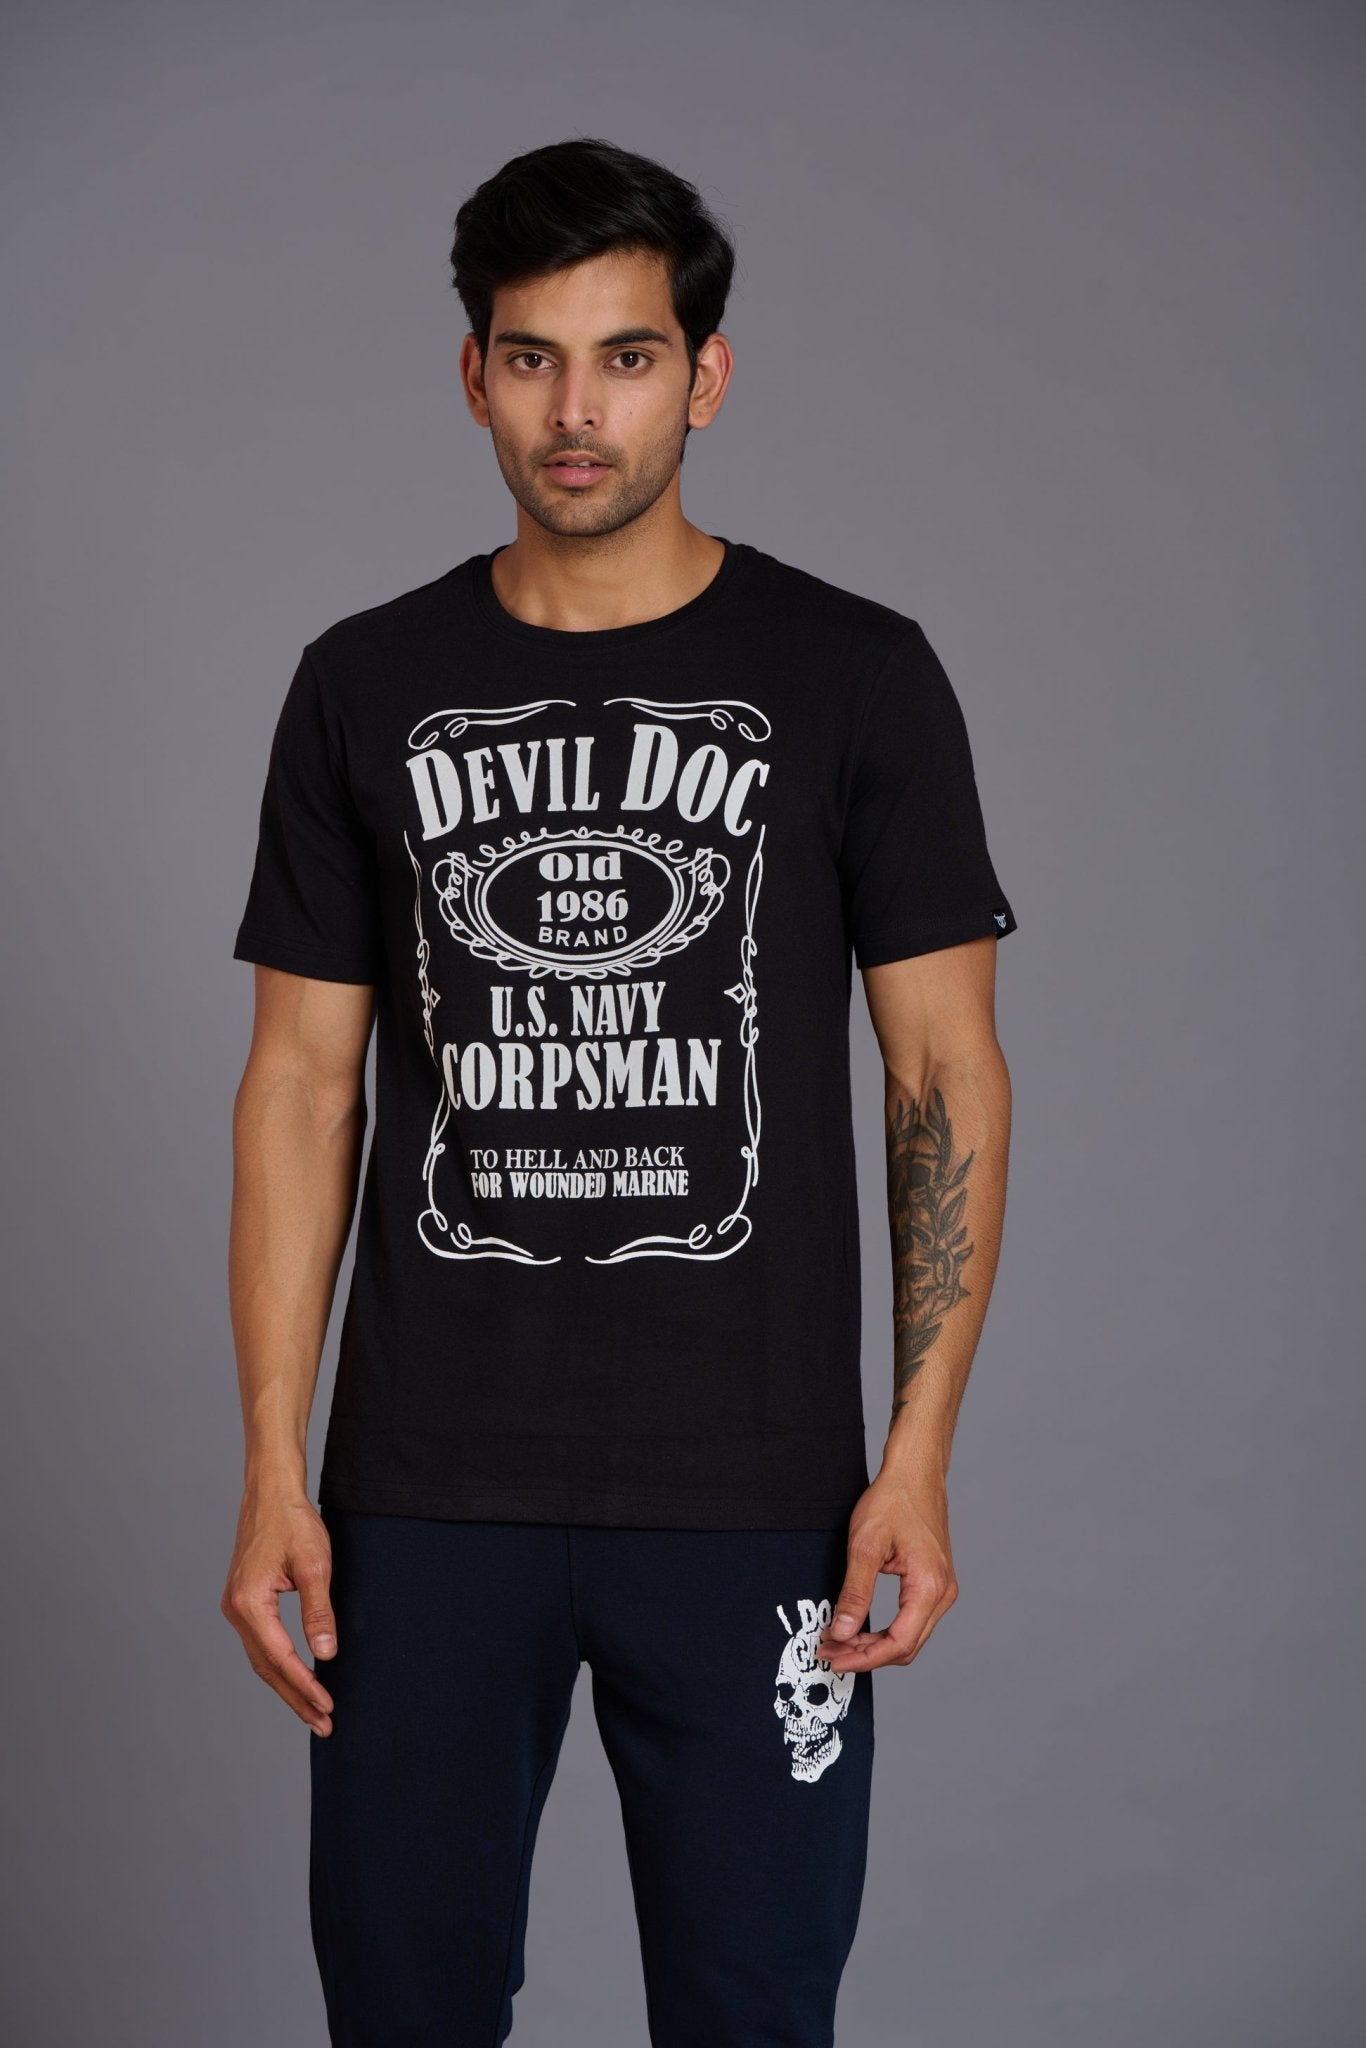 Devil Doc Printed Black T-Shirt for Men - Go Devil